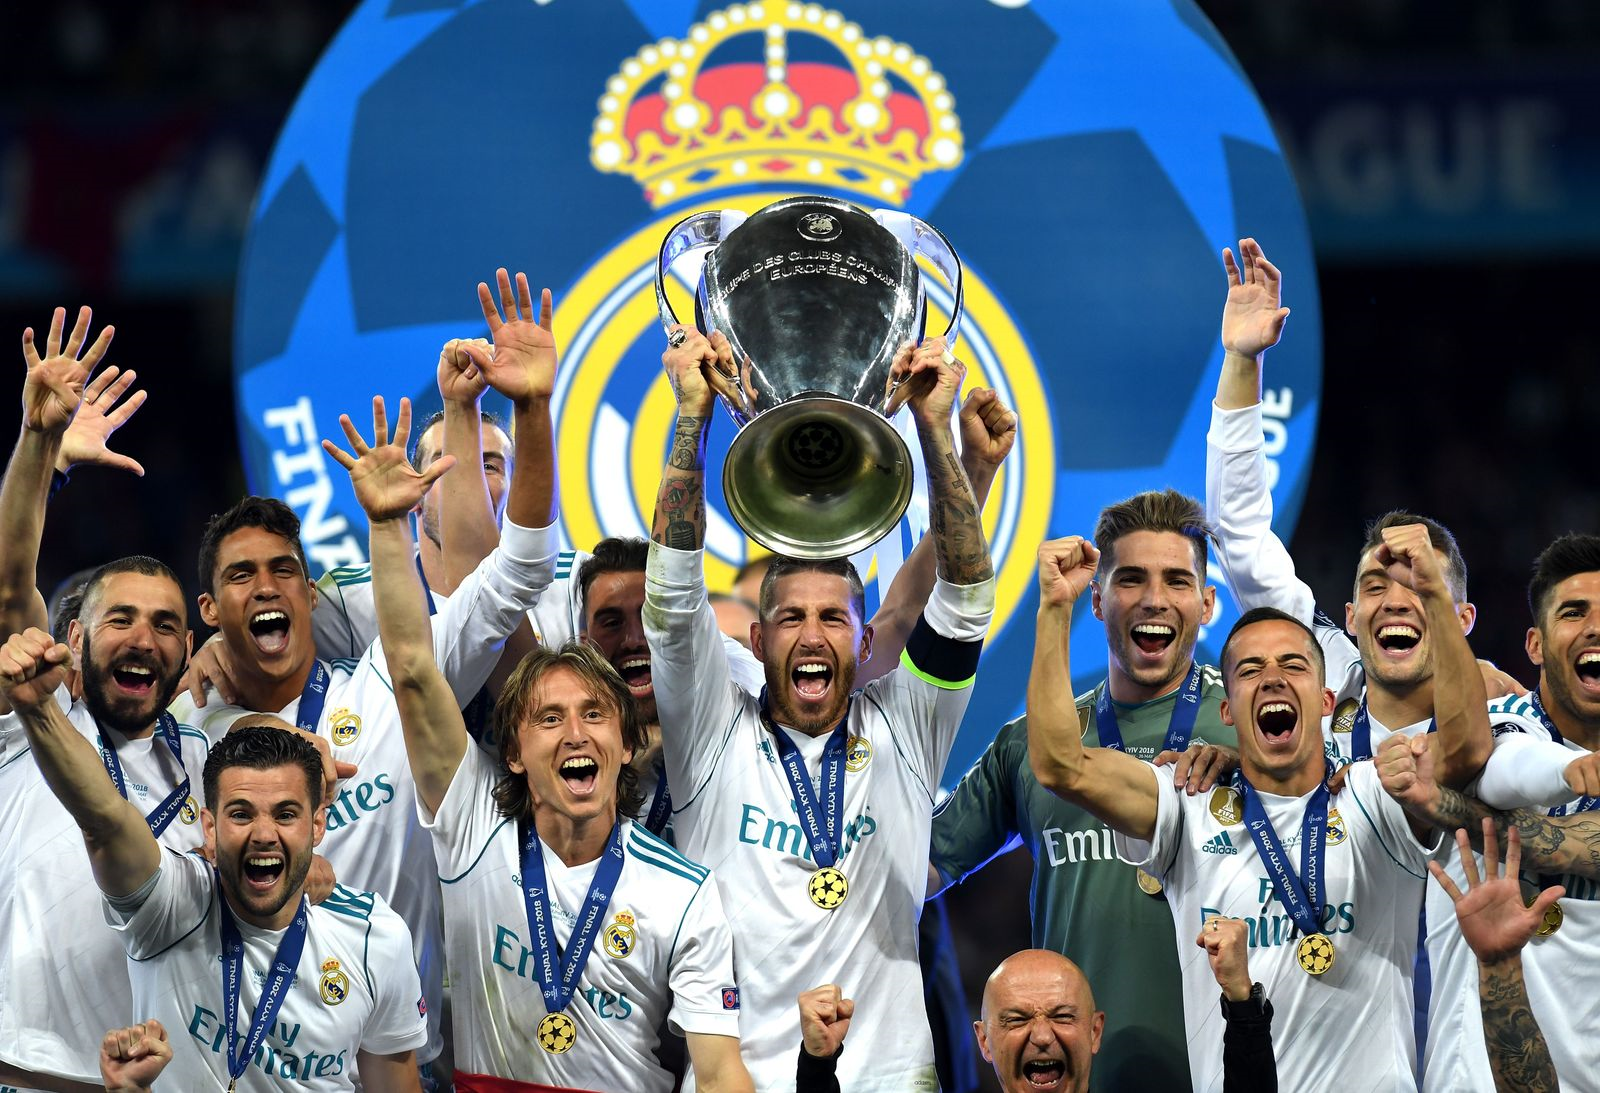 Реал Мадрид победитель Лиги чемпионов. Реал Мадрид чемпион Лиги чемпионов. Реал Мадрид чемпион Лиги чемпионов 2018. Реал Мадрид победитель Лиги чемпионов 2017.